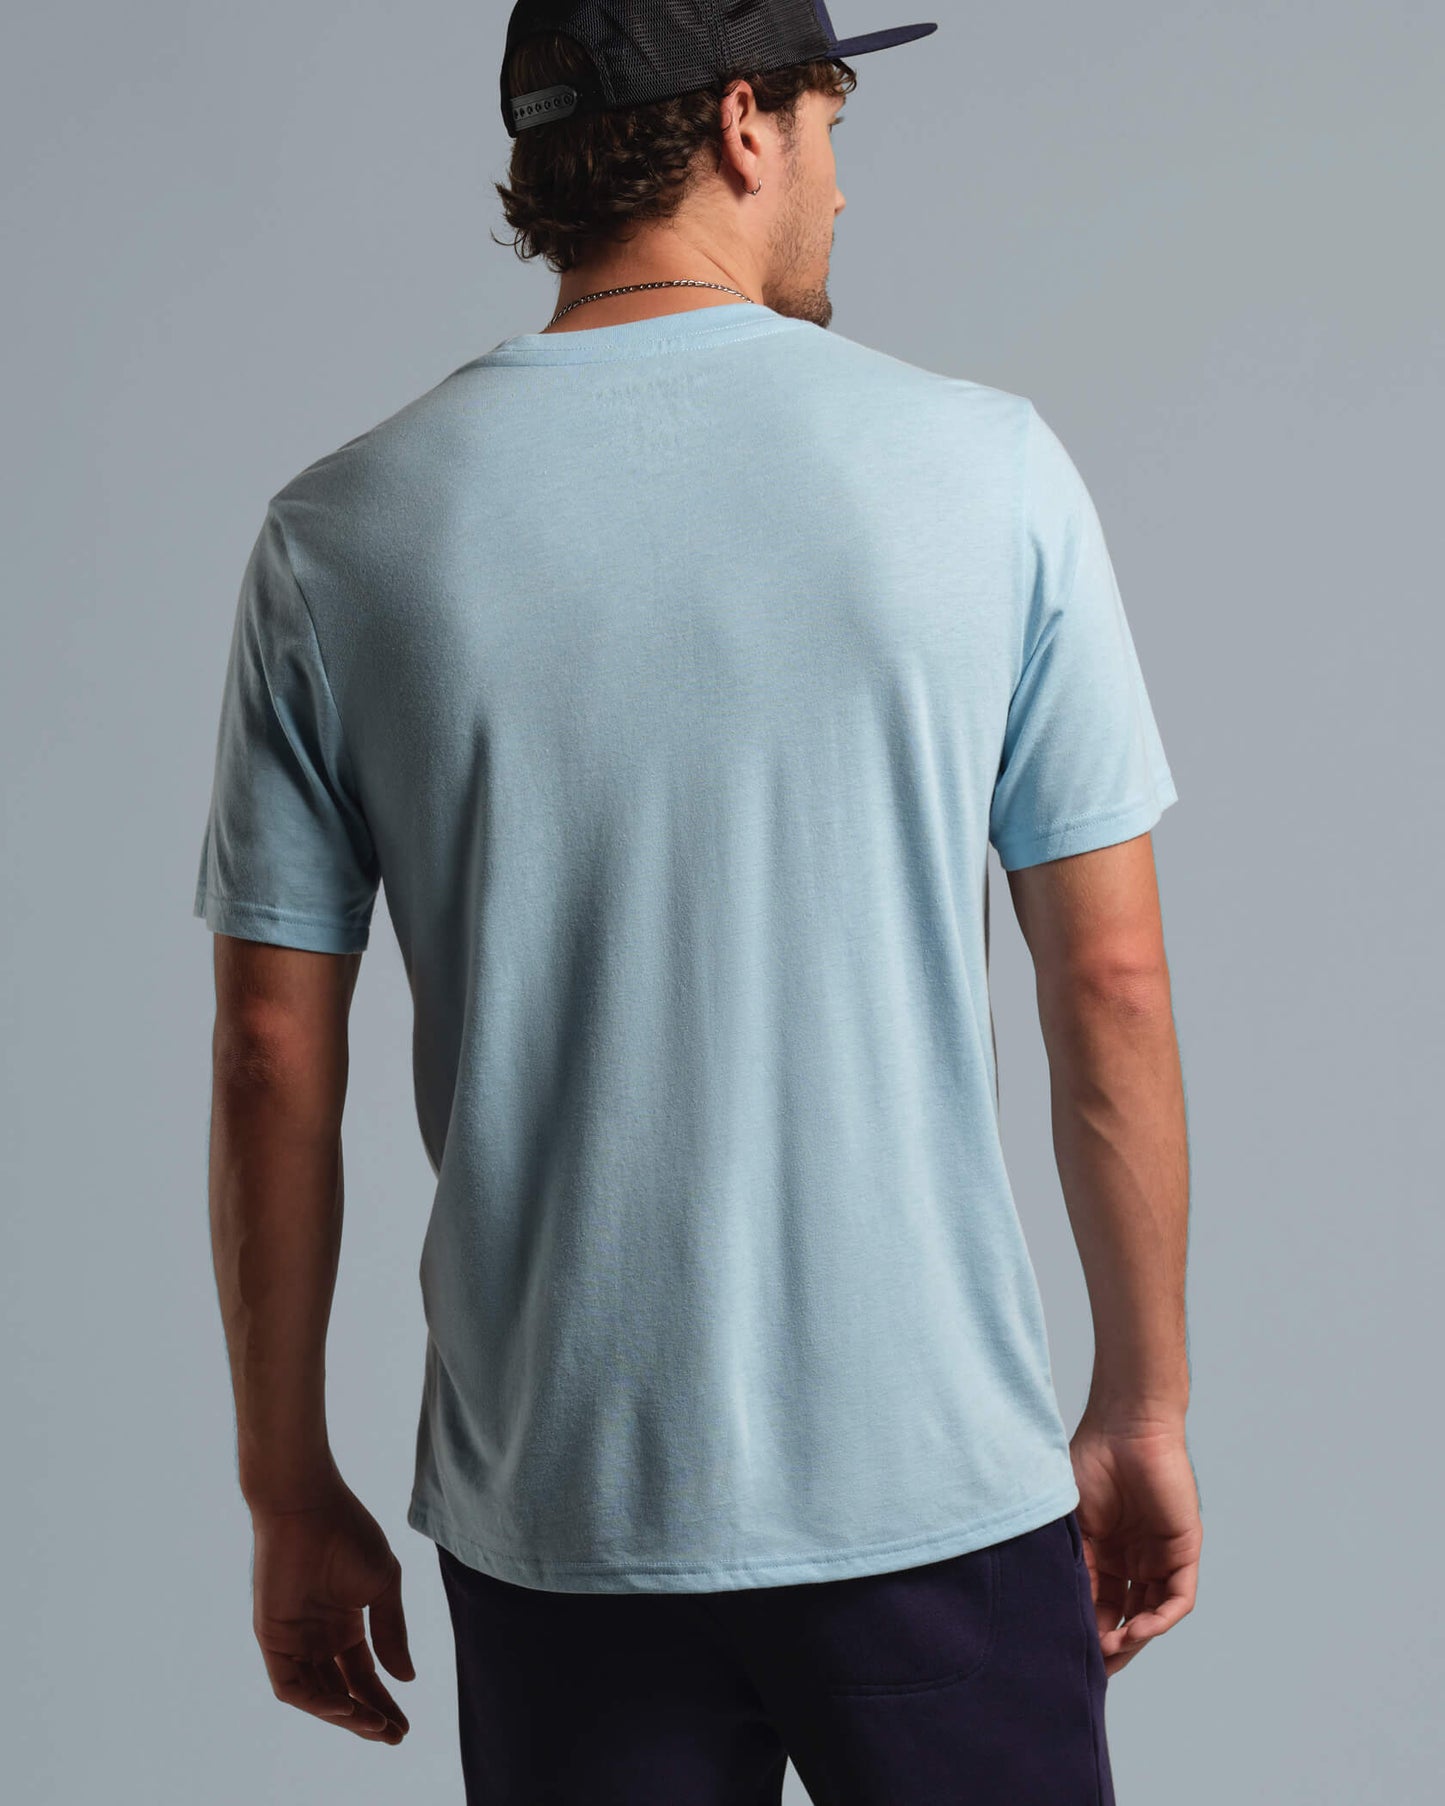 Origin SuperBlend T-Shirt |Sky / Navy| detail